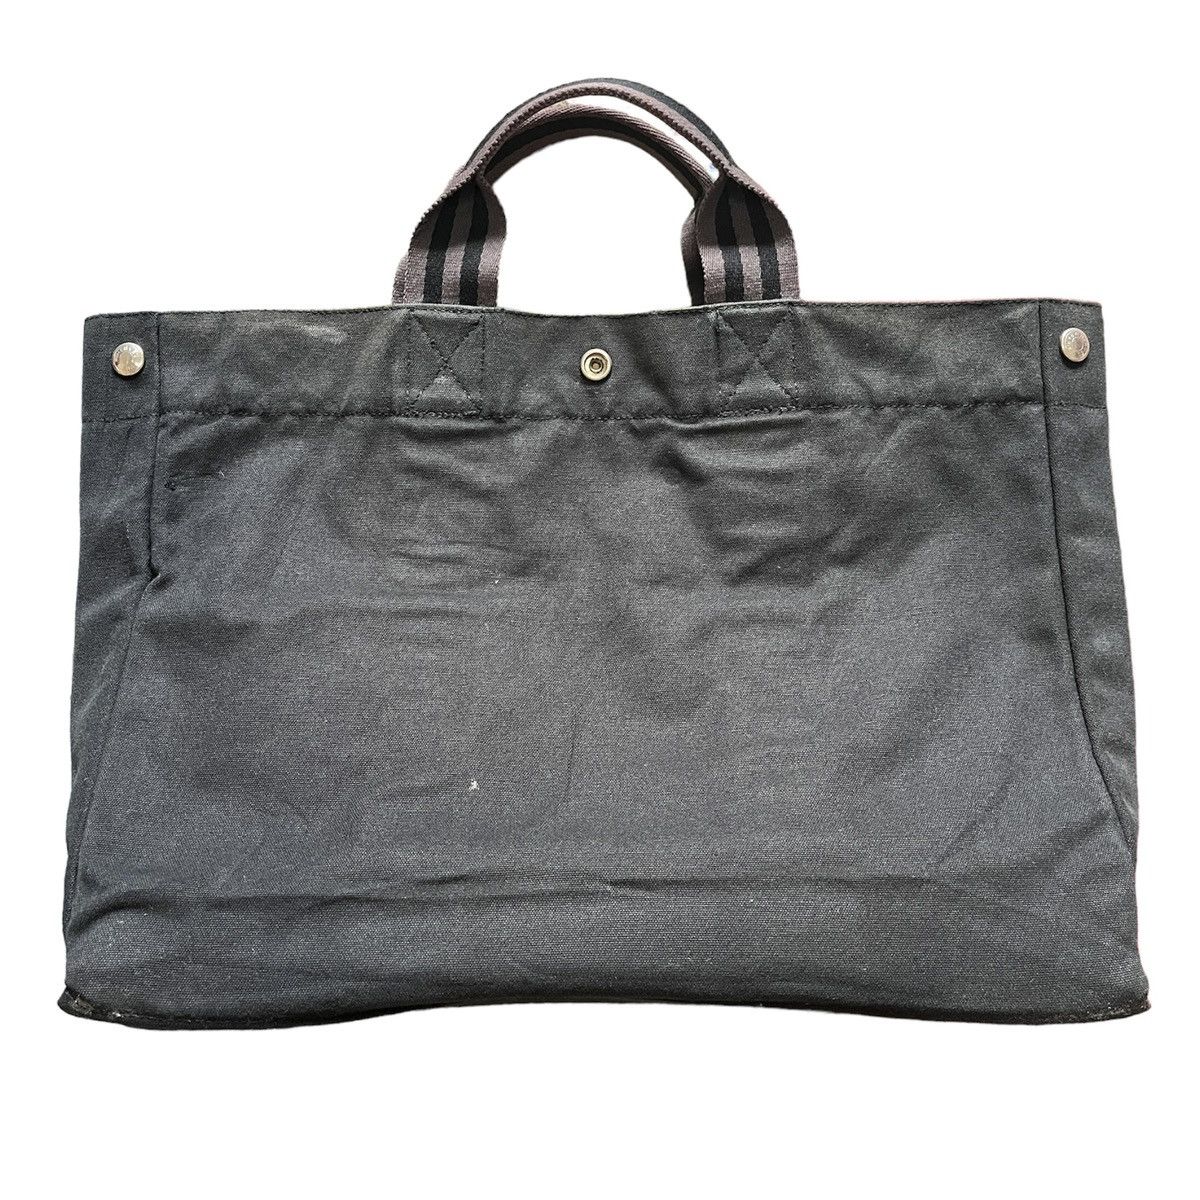 Hermes Birkin Tote Bag Waterproof - 7